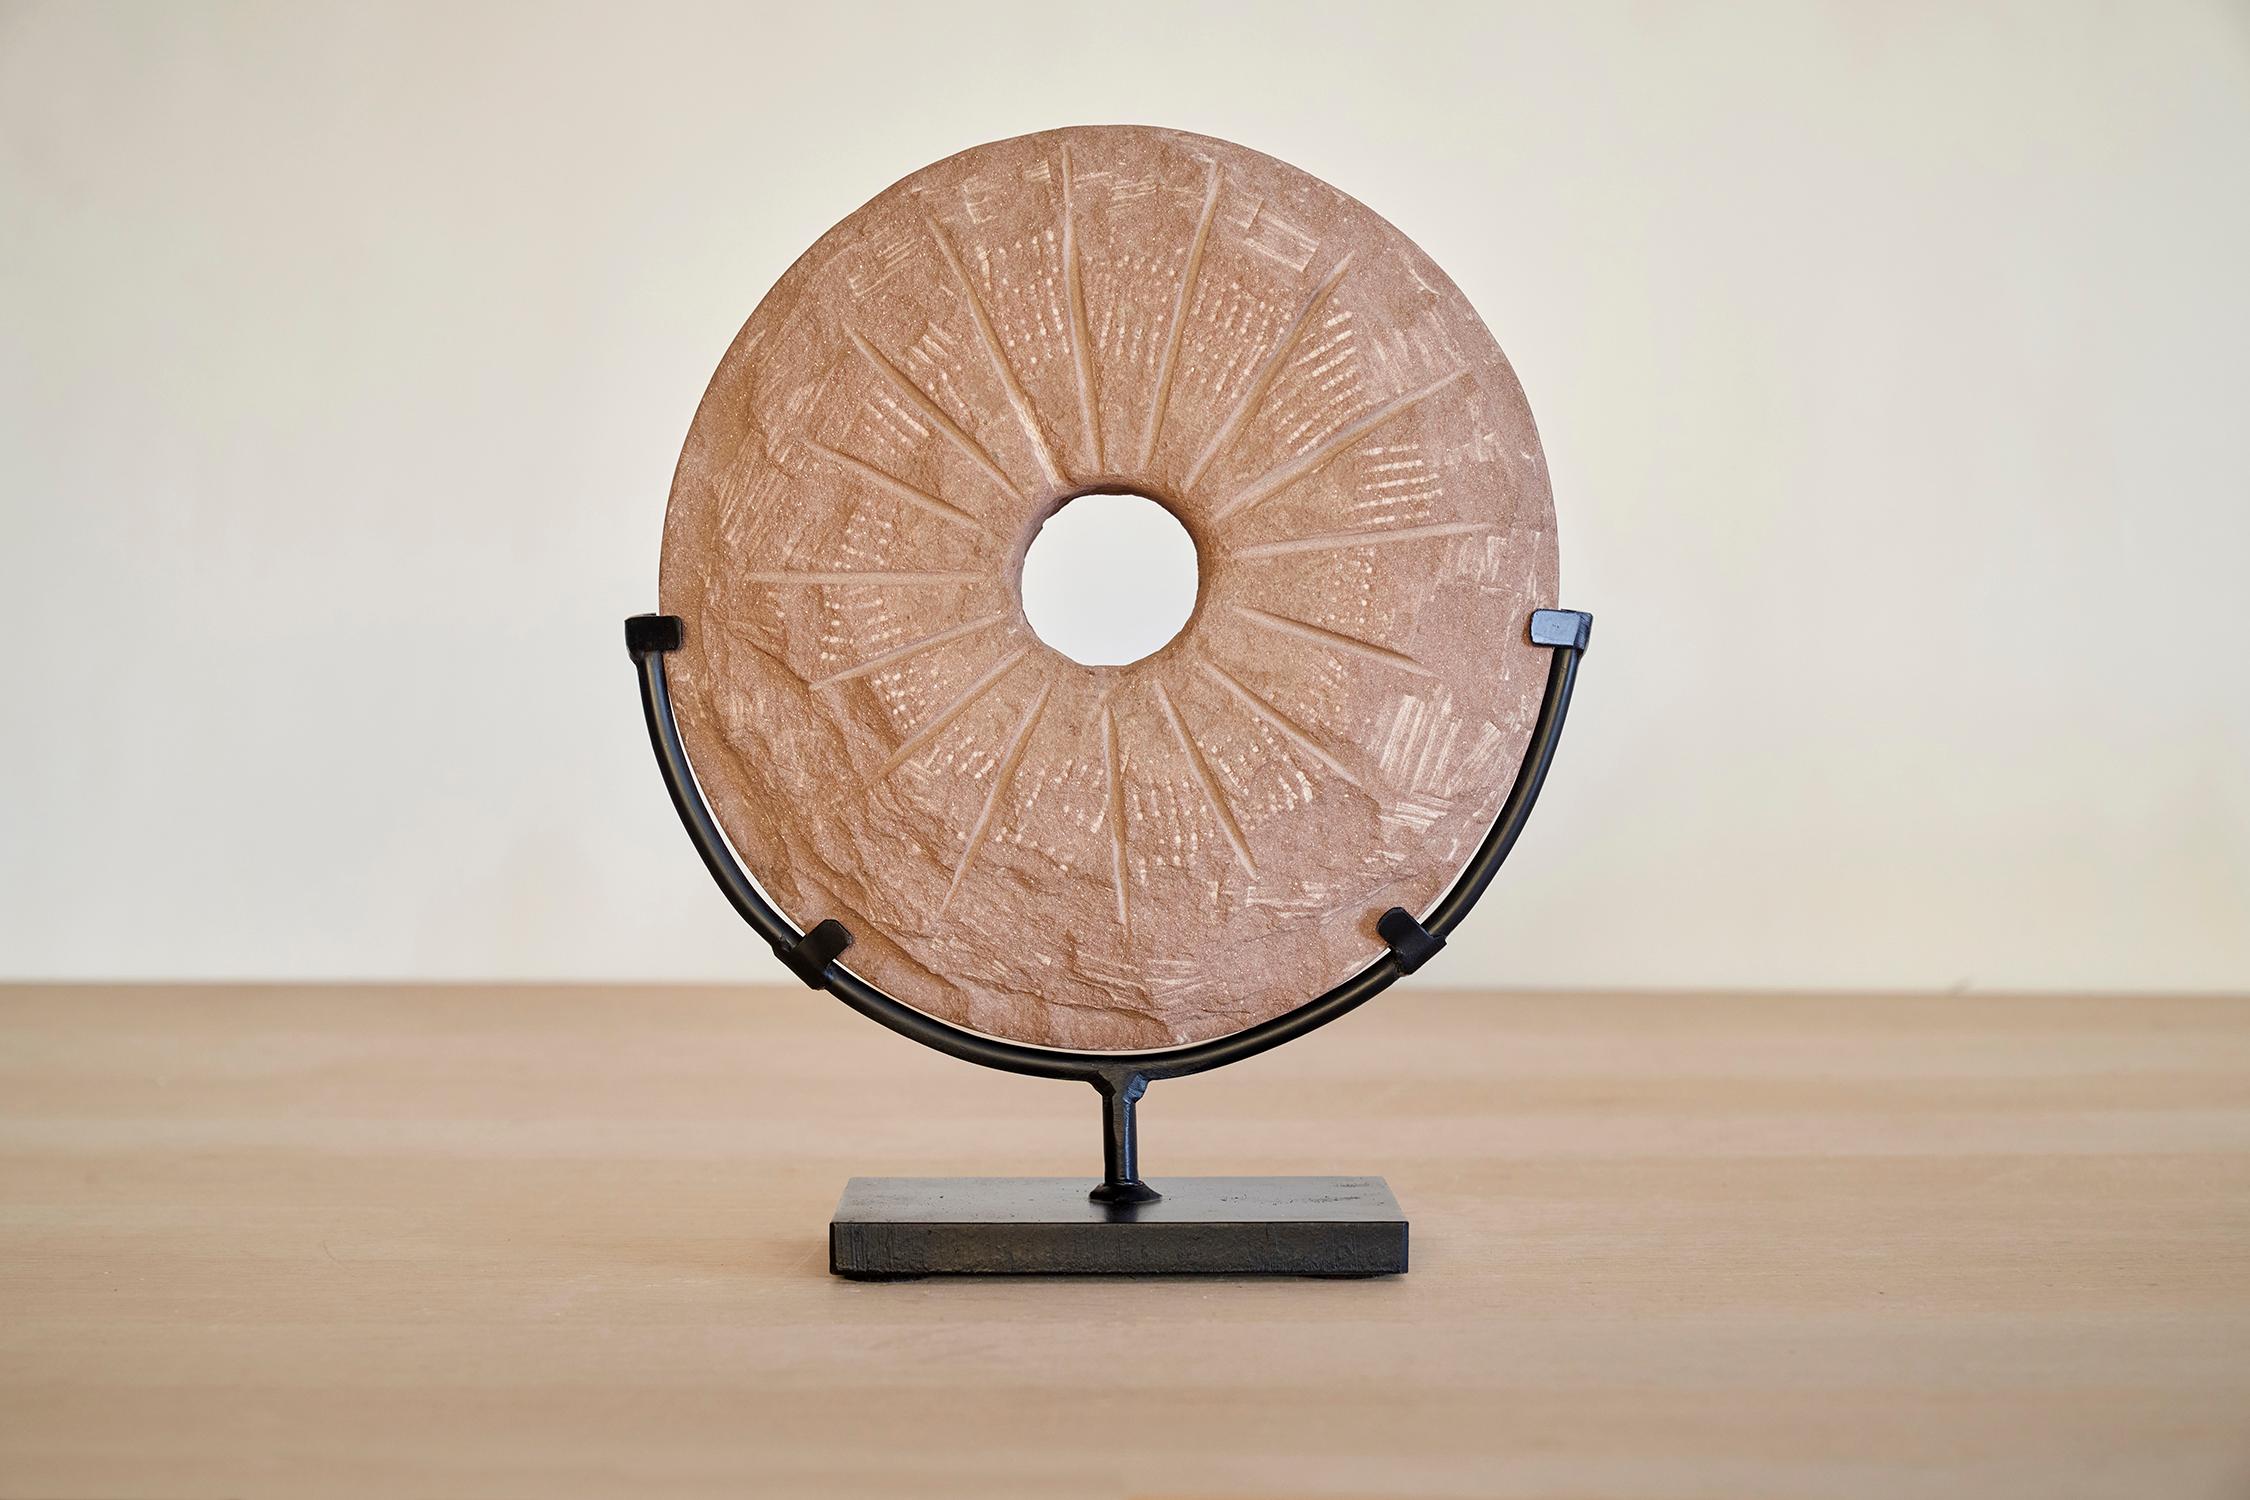 Petite sculpture de la roue du temps par Jean-Baptiste Van Den Heede
Pièce unique
Dimensions : Avec support : L 29 x P 11 x H 35 cm, Diamètre de la pierre : 27 cm.
MATERIAL : Pierre.

LA 